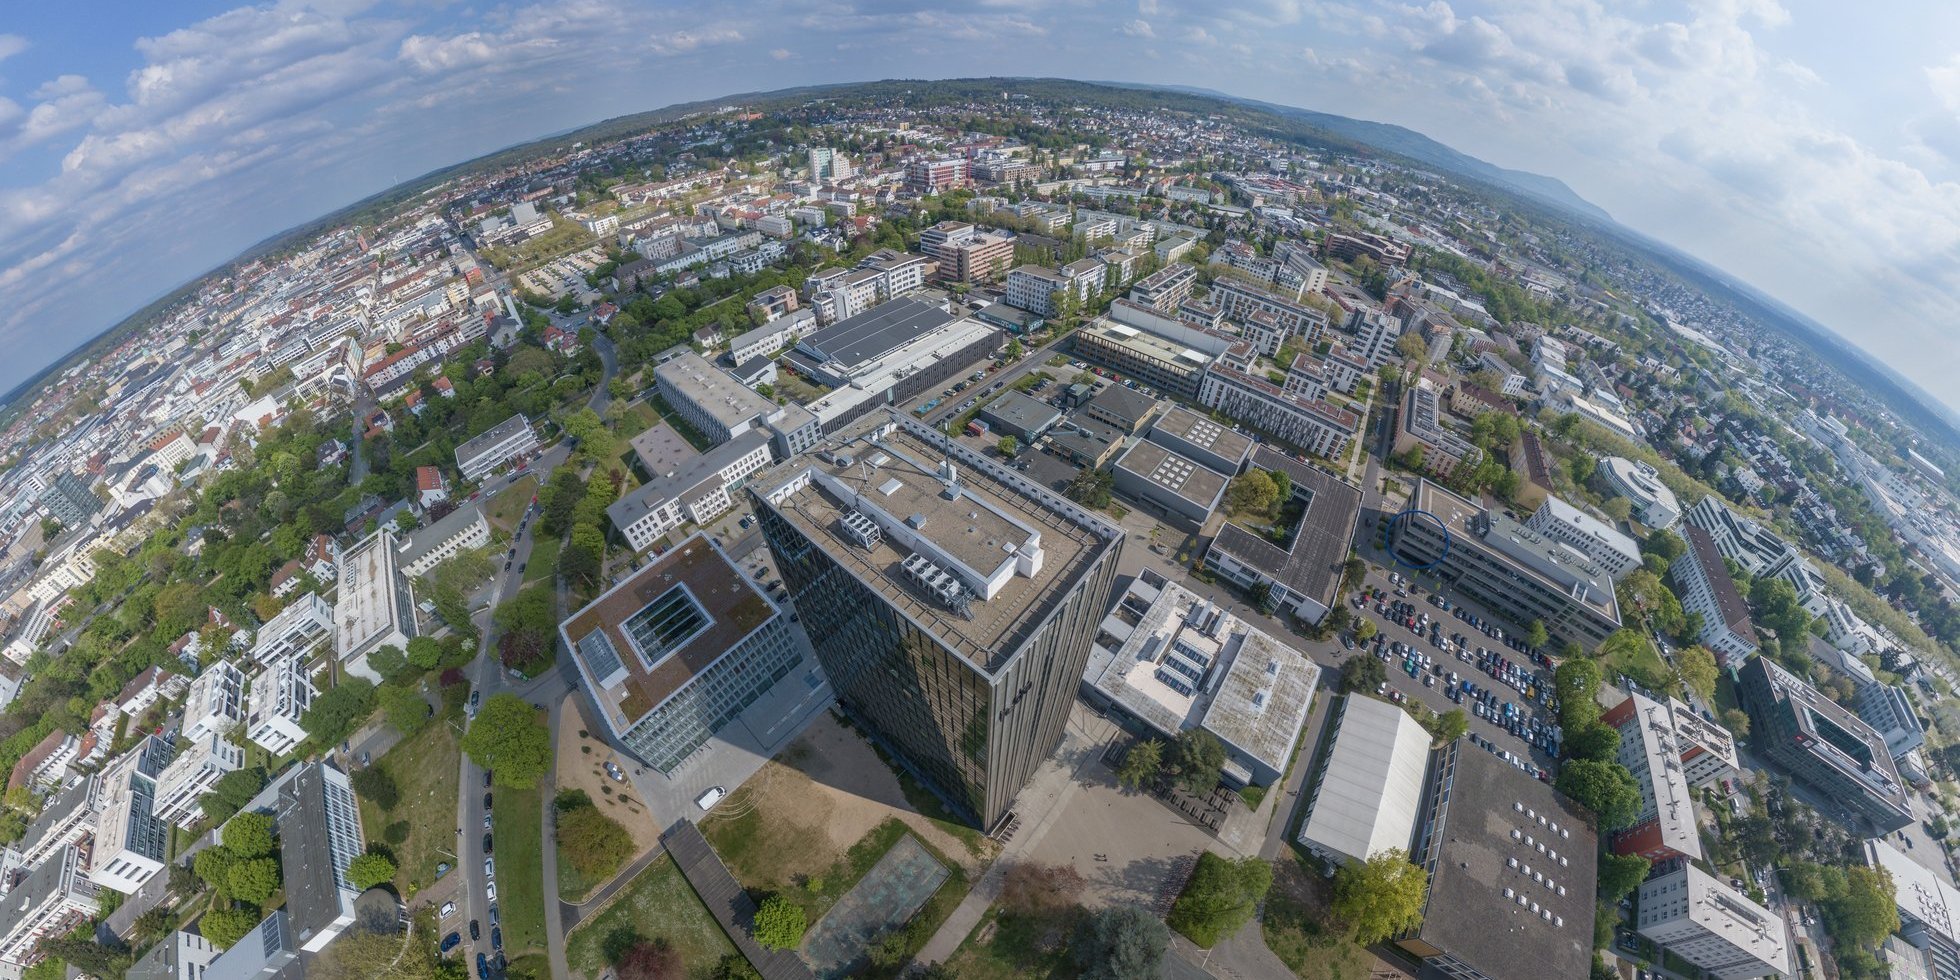 Drohnenaufnahme des Hauptcampus der Hochschule Darmstadt, im Zentrum des Bildes ist das C10-Hochhaus zu sehen